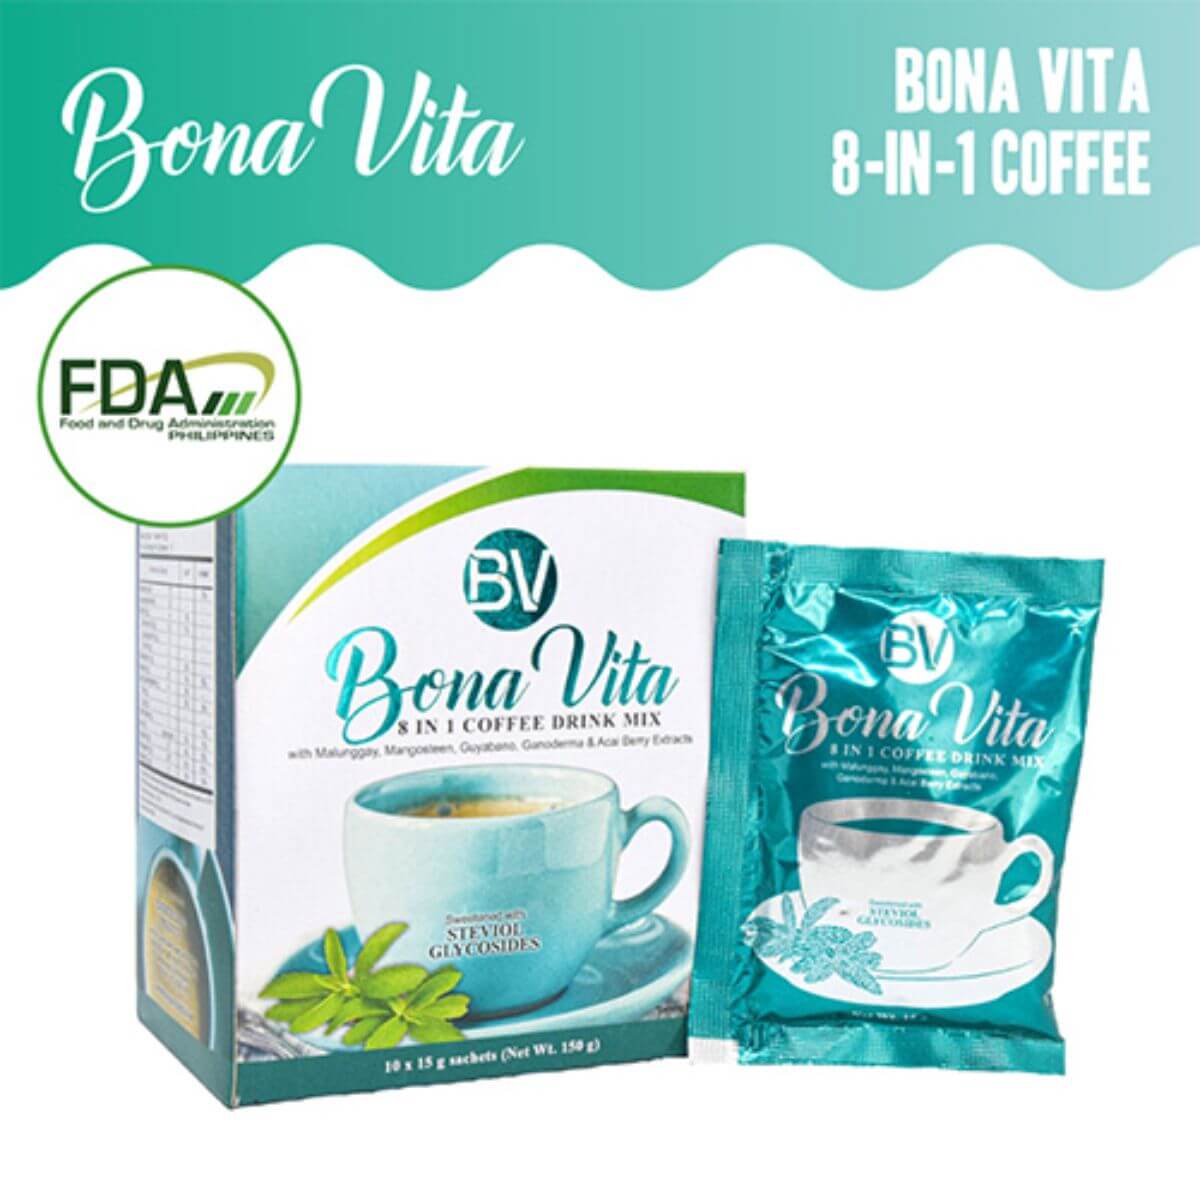 Supply of Bona Vita 8-in-1 coffee and BonaSlim 15-in-1 coffee